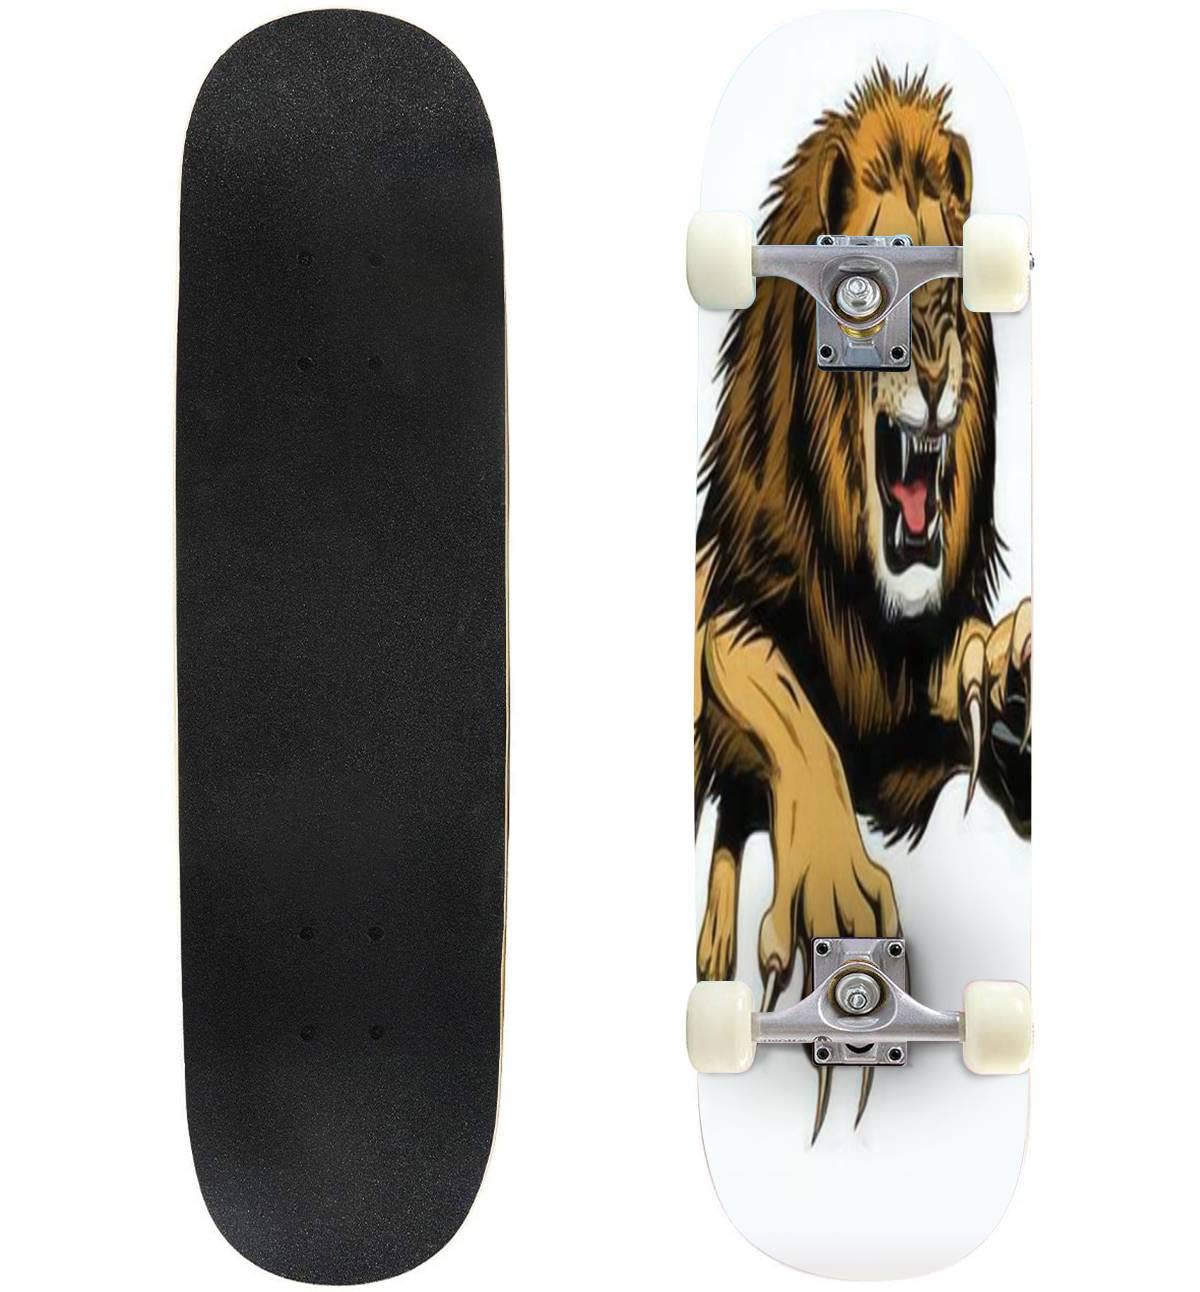 送料無料Skateboard Standard Double Kick Concave Longboard of Angry Leaping Lion Fashion Professional Extreme Sports for B